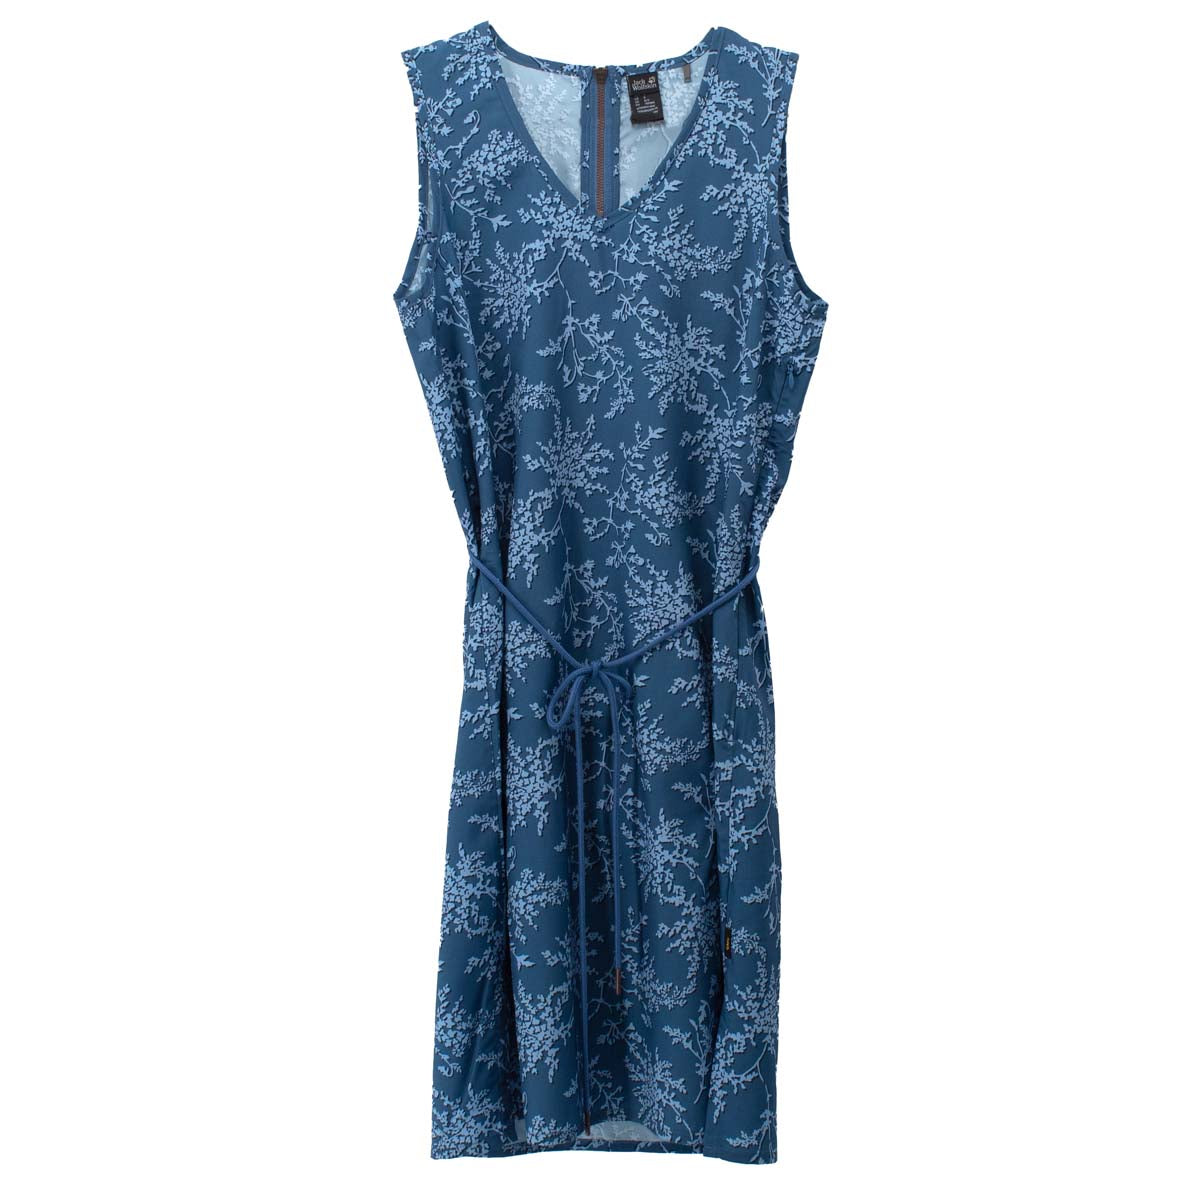 Jack Wolfskin Tioga Road Print Dress Damen Kleid Sommerkleid 1506101-7717 S